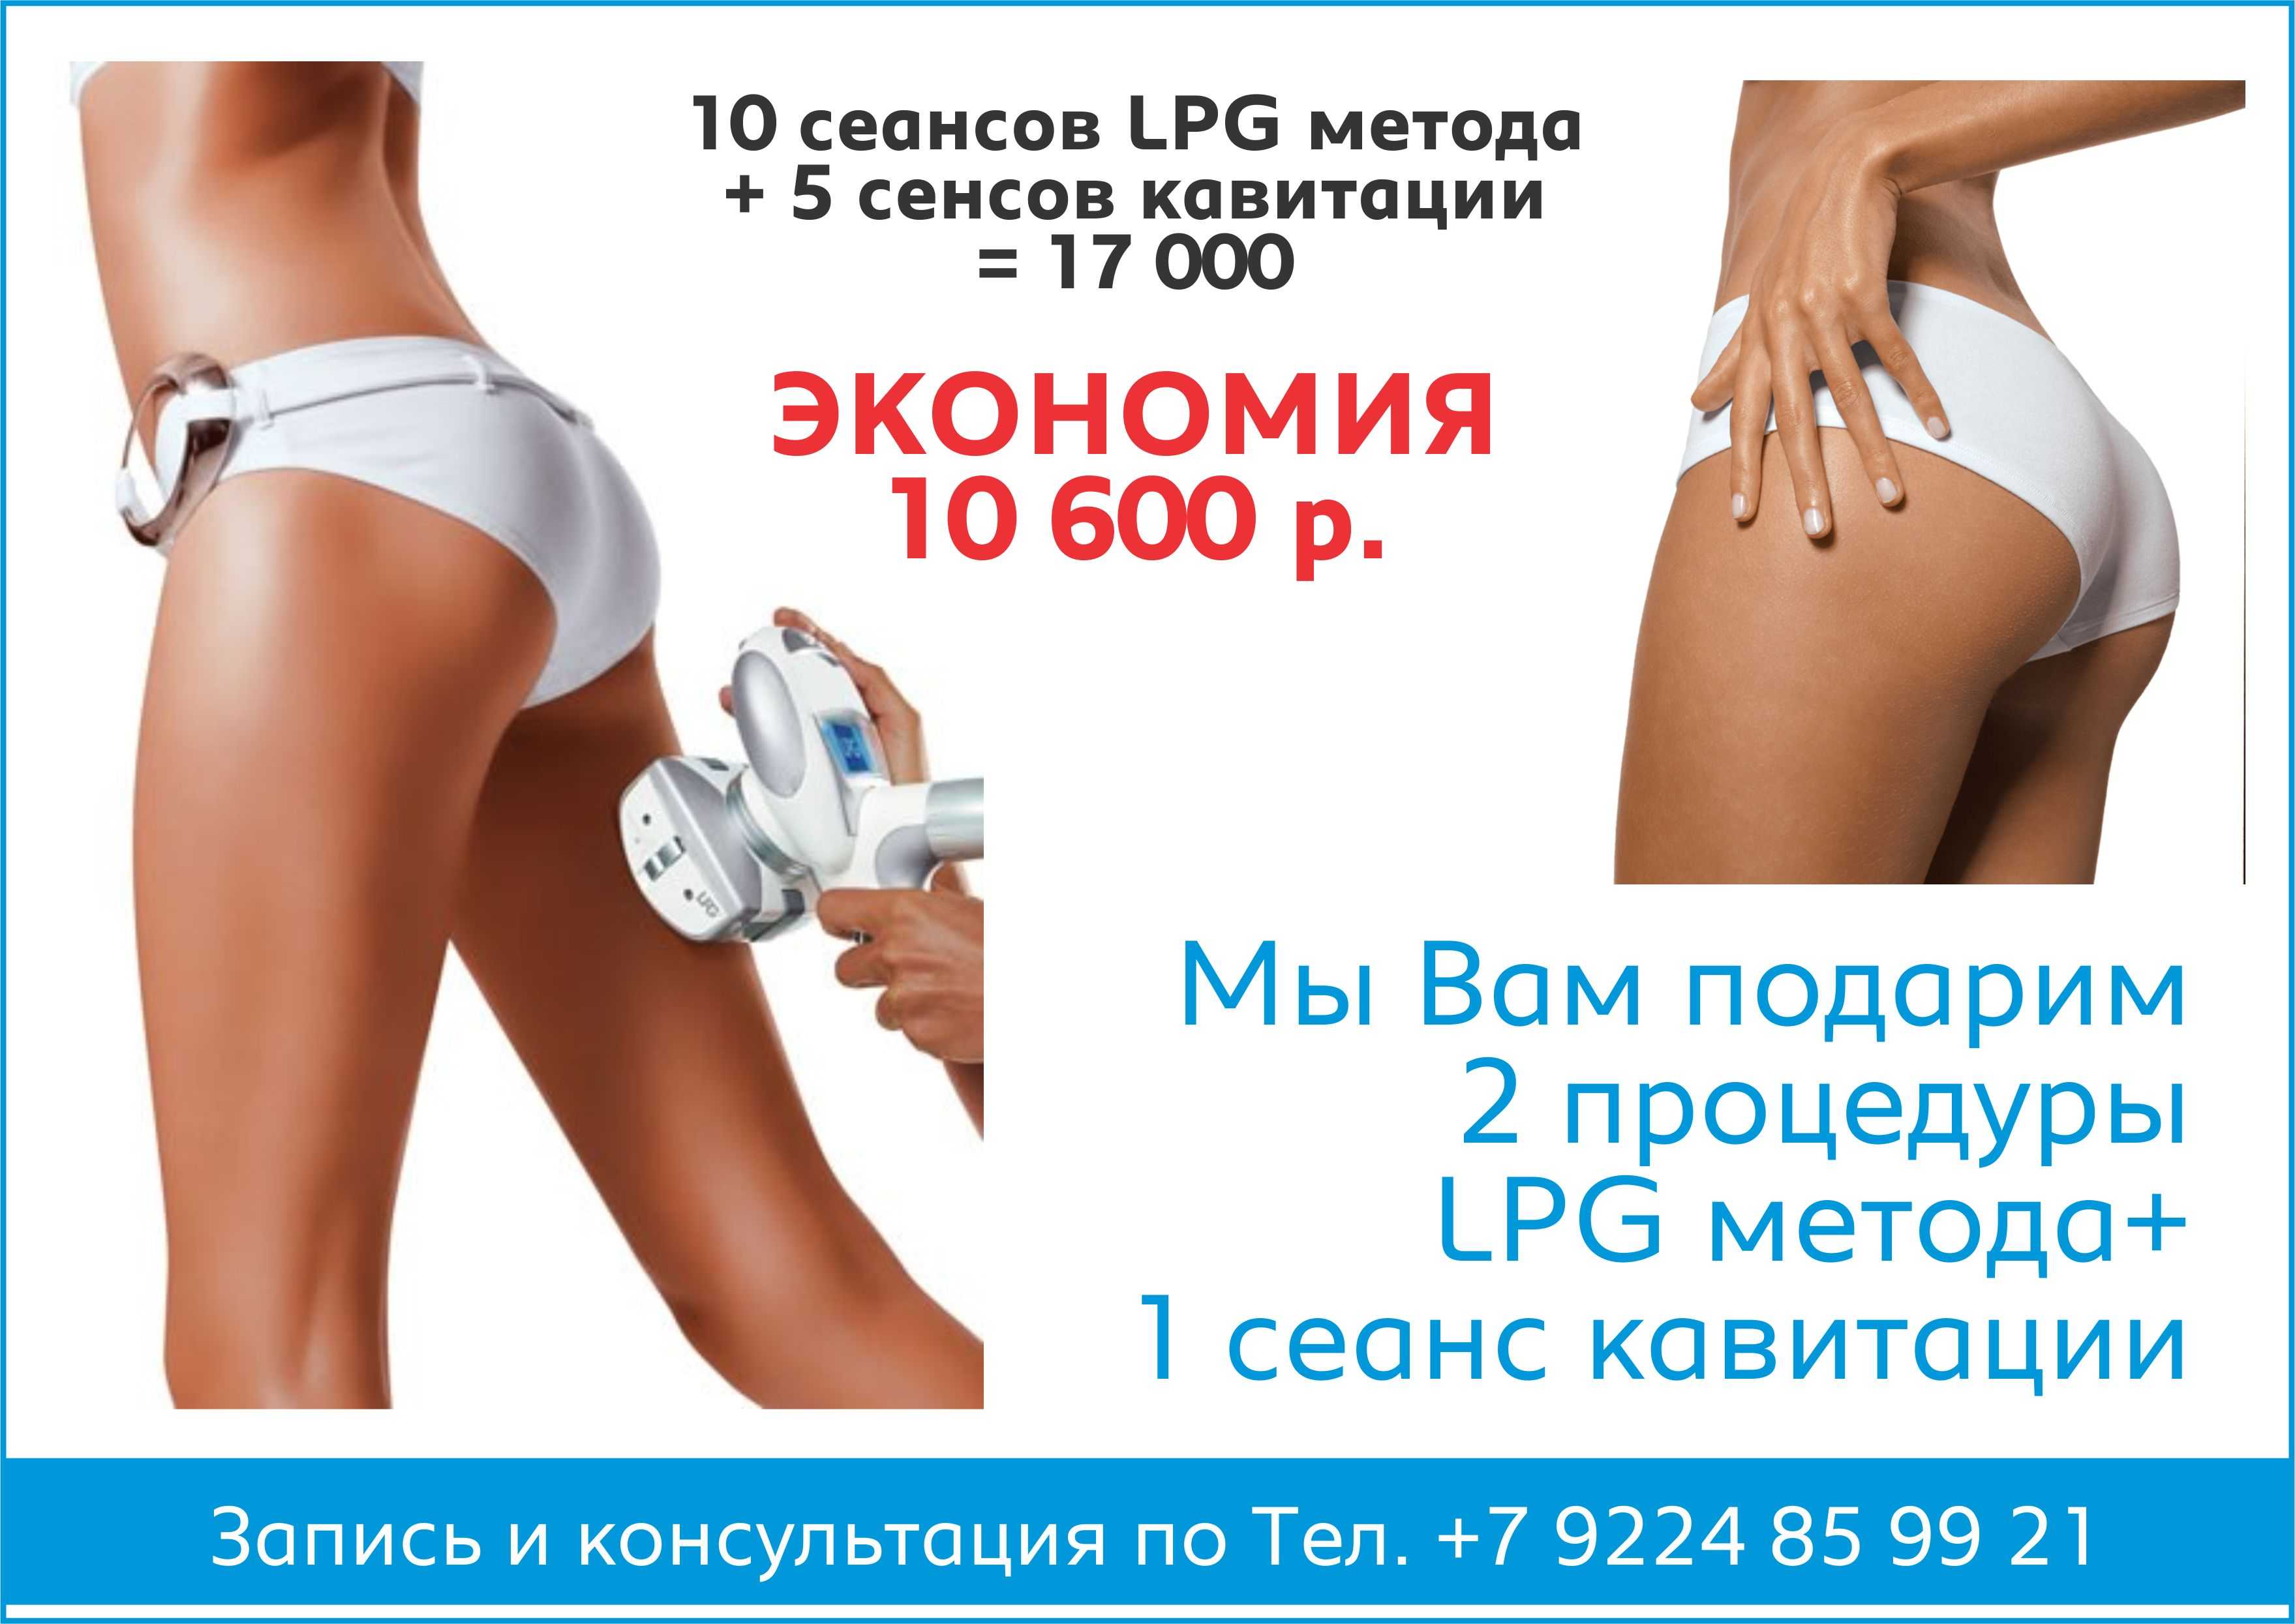 Lpg массаж плюсы. Вакуумный массаж лпж. Ролико-вакуумный массаж LPG. Аппаратный массаж для похудения LPG. LPG массаж акция.